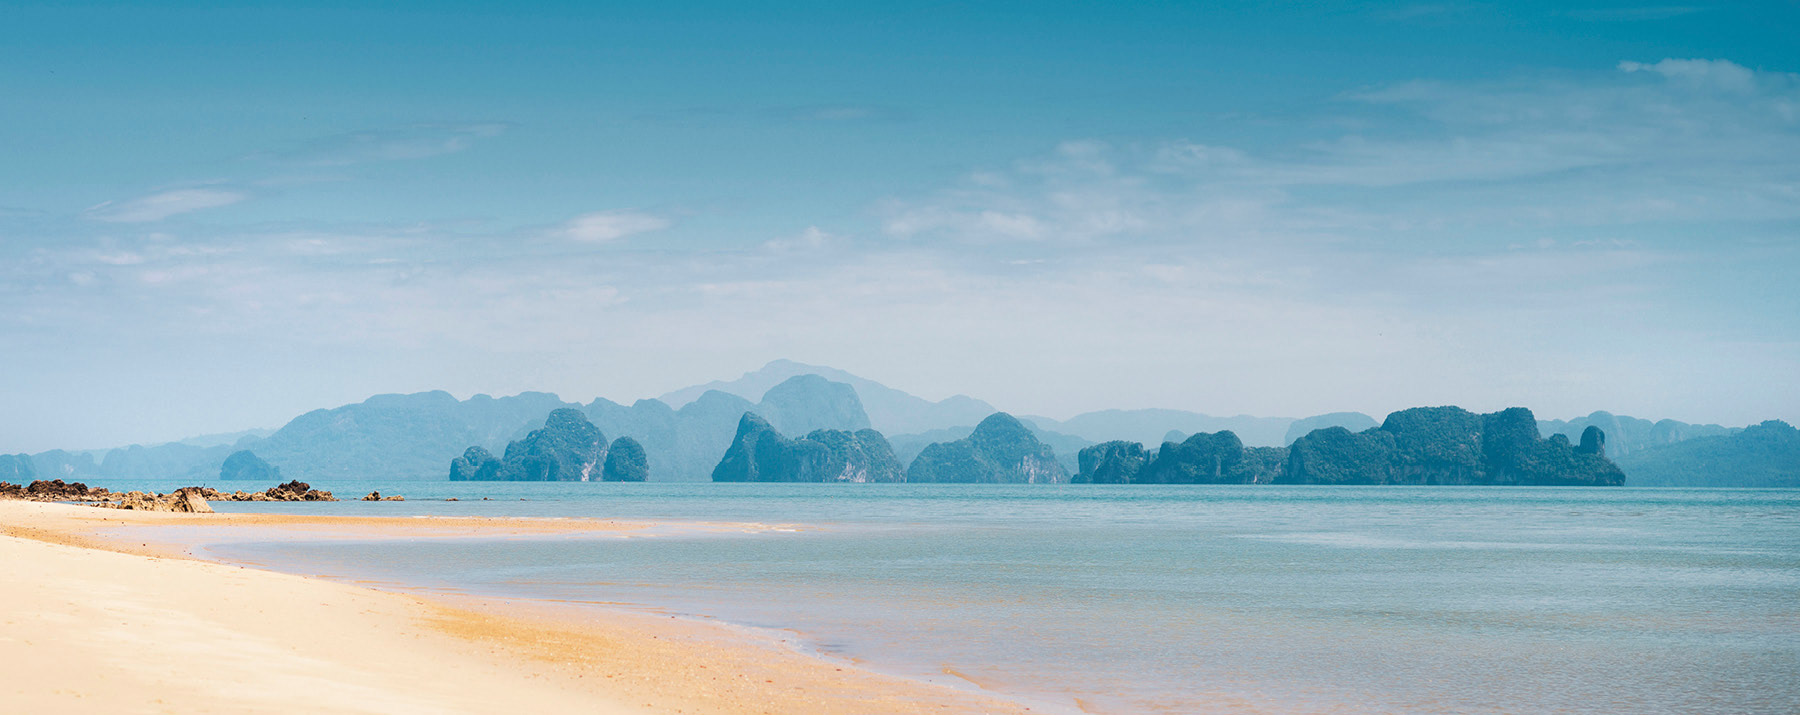 La plage mais pas seulement Thaïlande